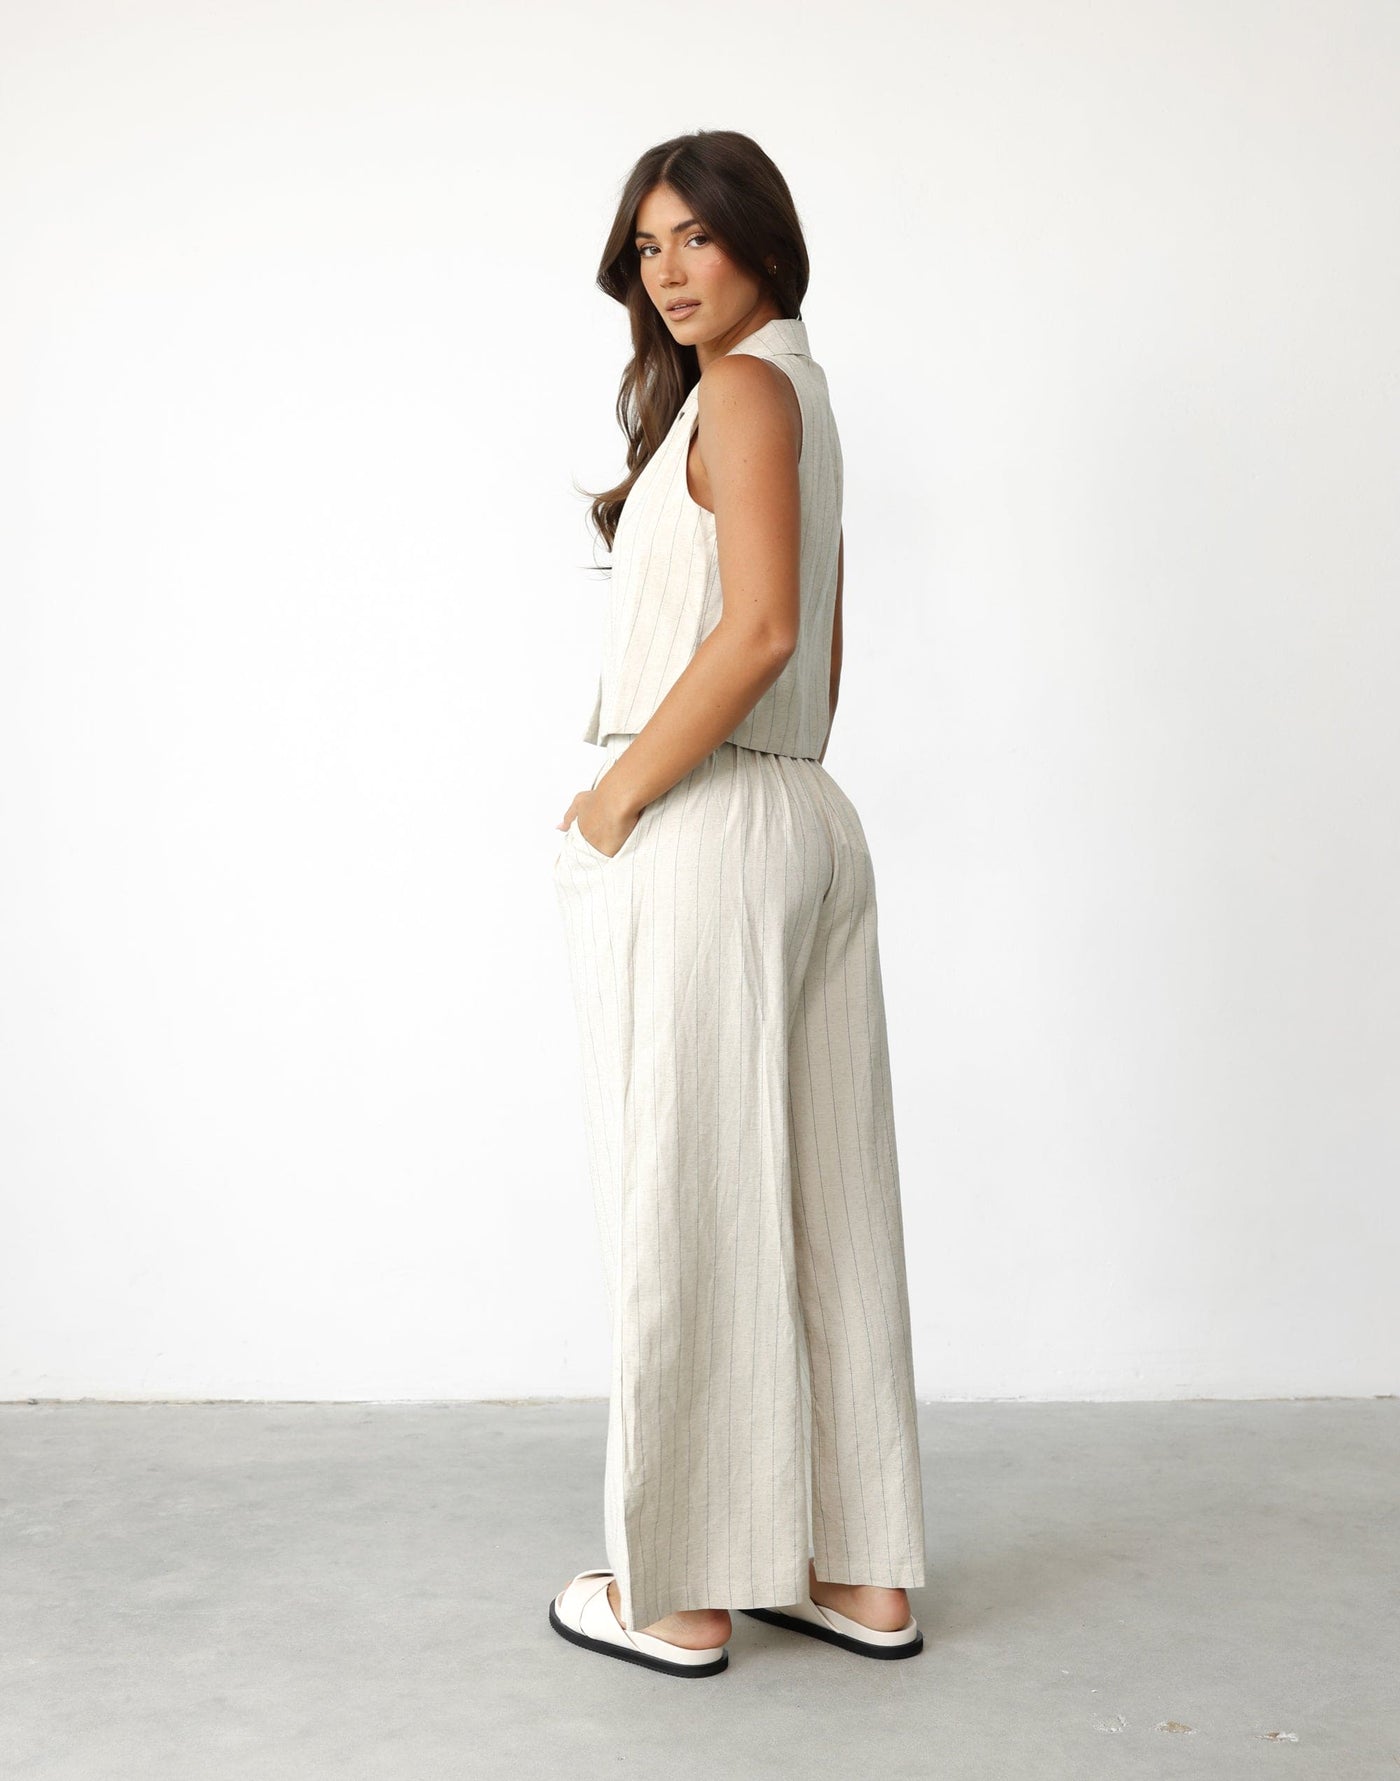 Nicolah Pants (Oatmeal Stripe) - - Women's Pants - Charcoal Clothing